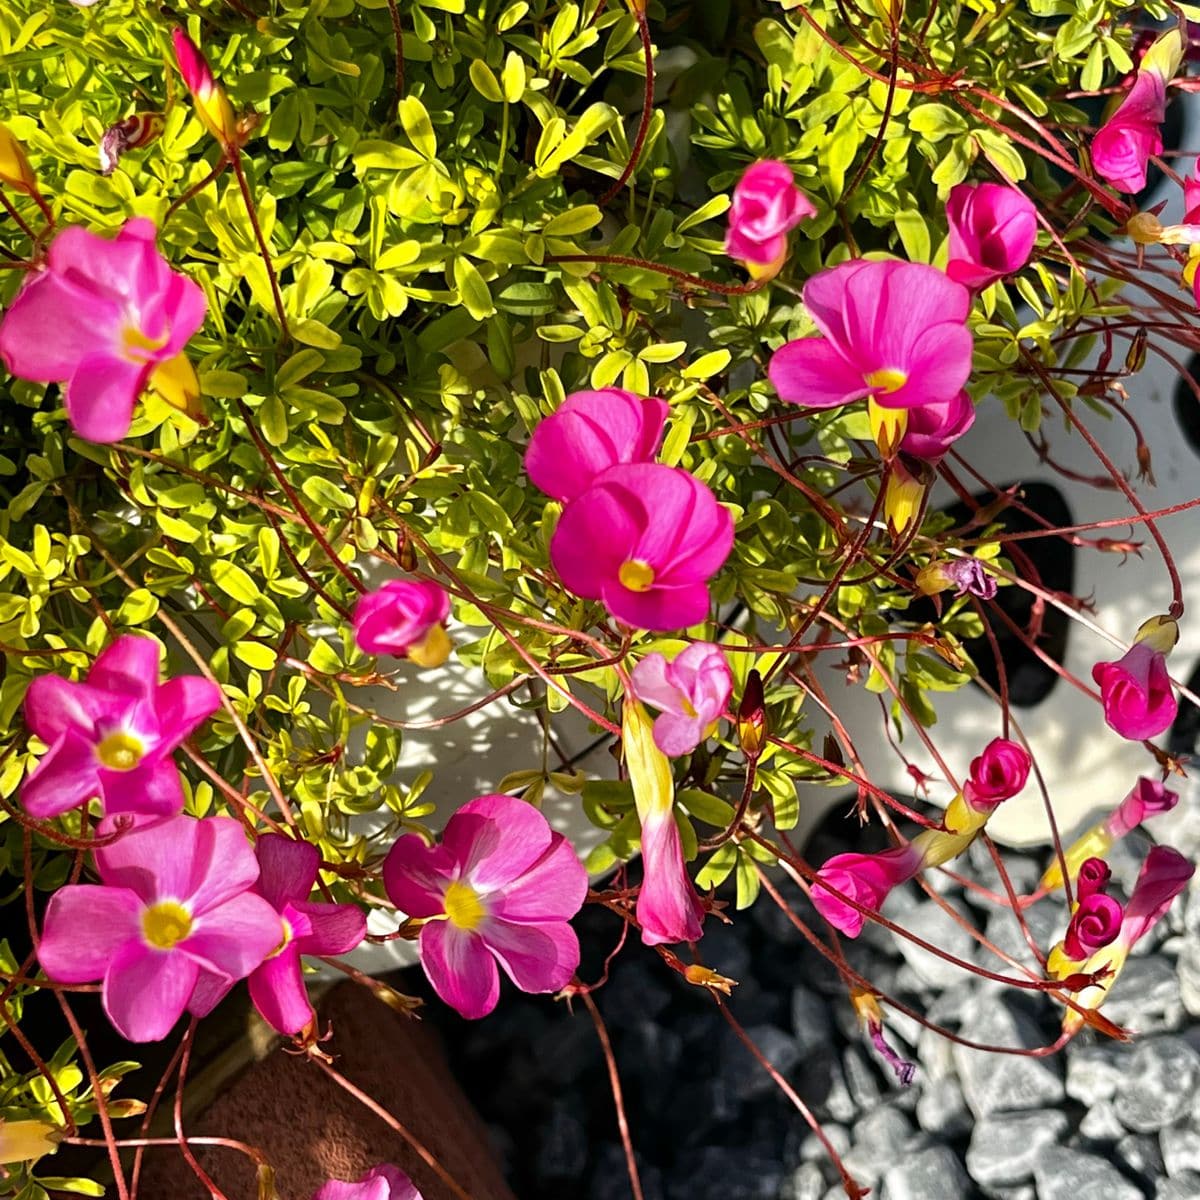 オキザリス 桃の輝き Oxalis 039 Momo N 庭に咲く花season19 のアルバム みんなの趣味の園芸141